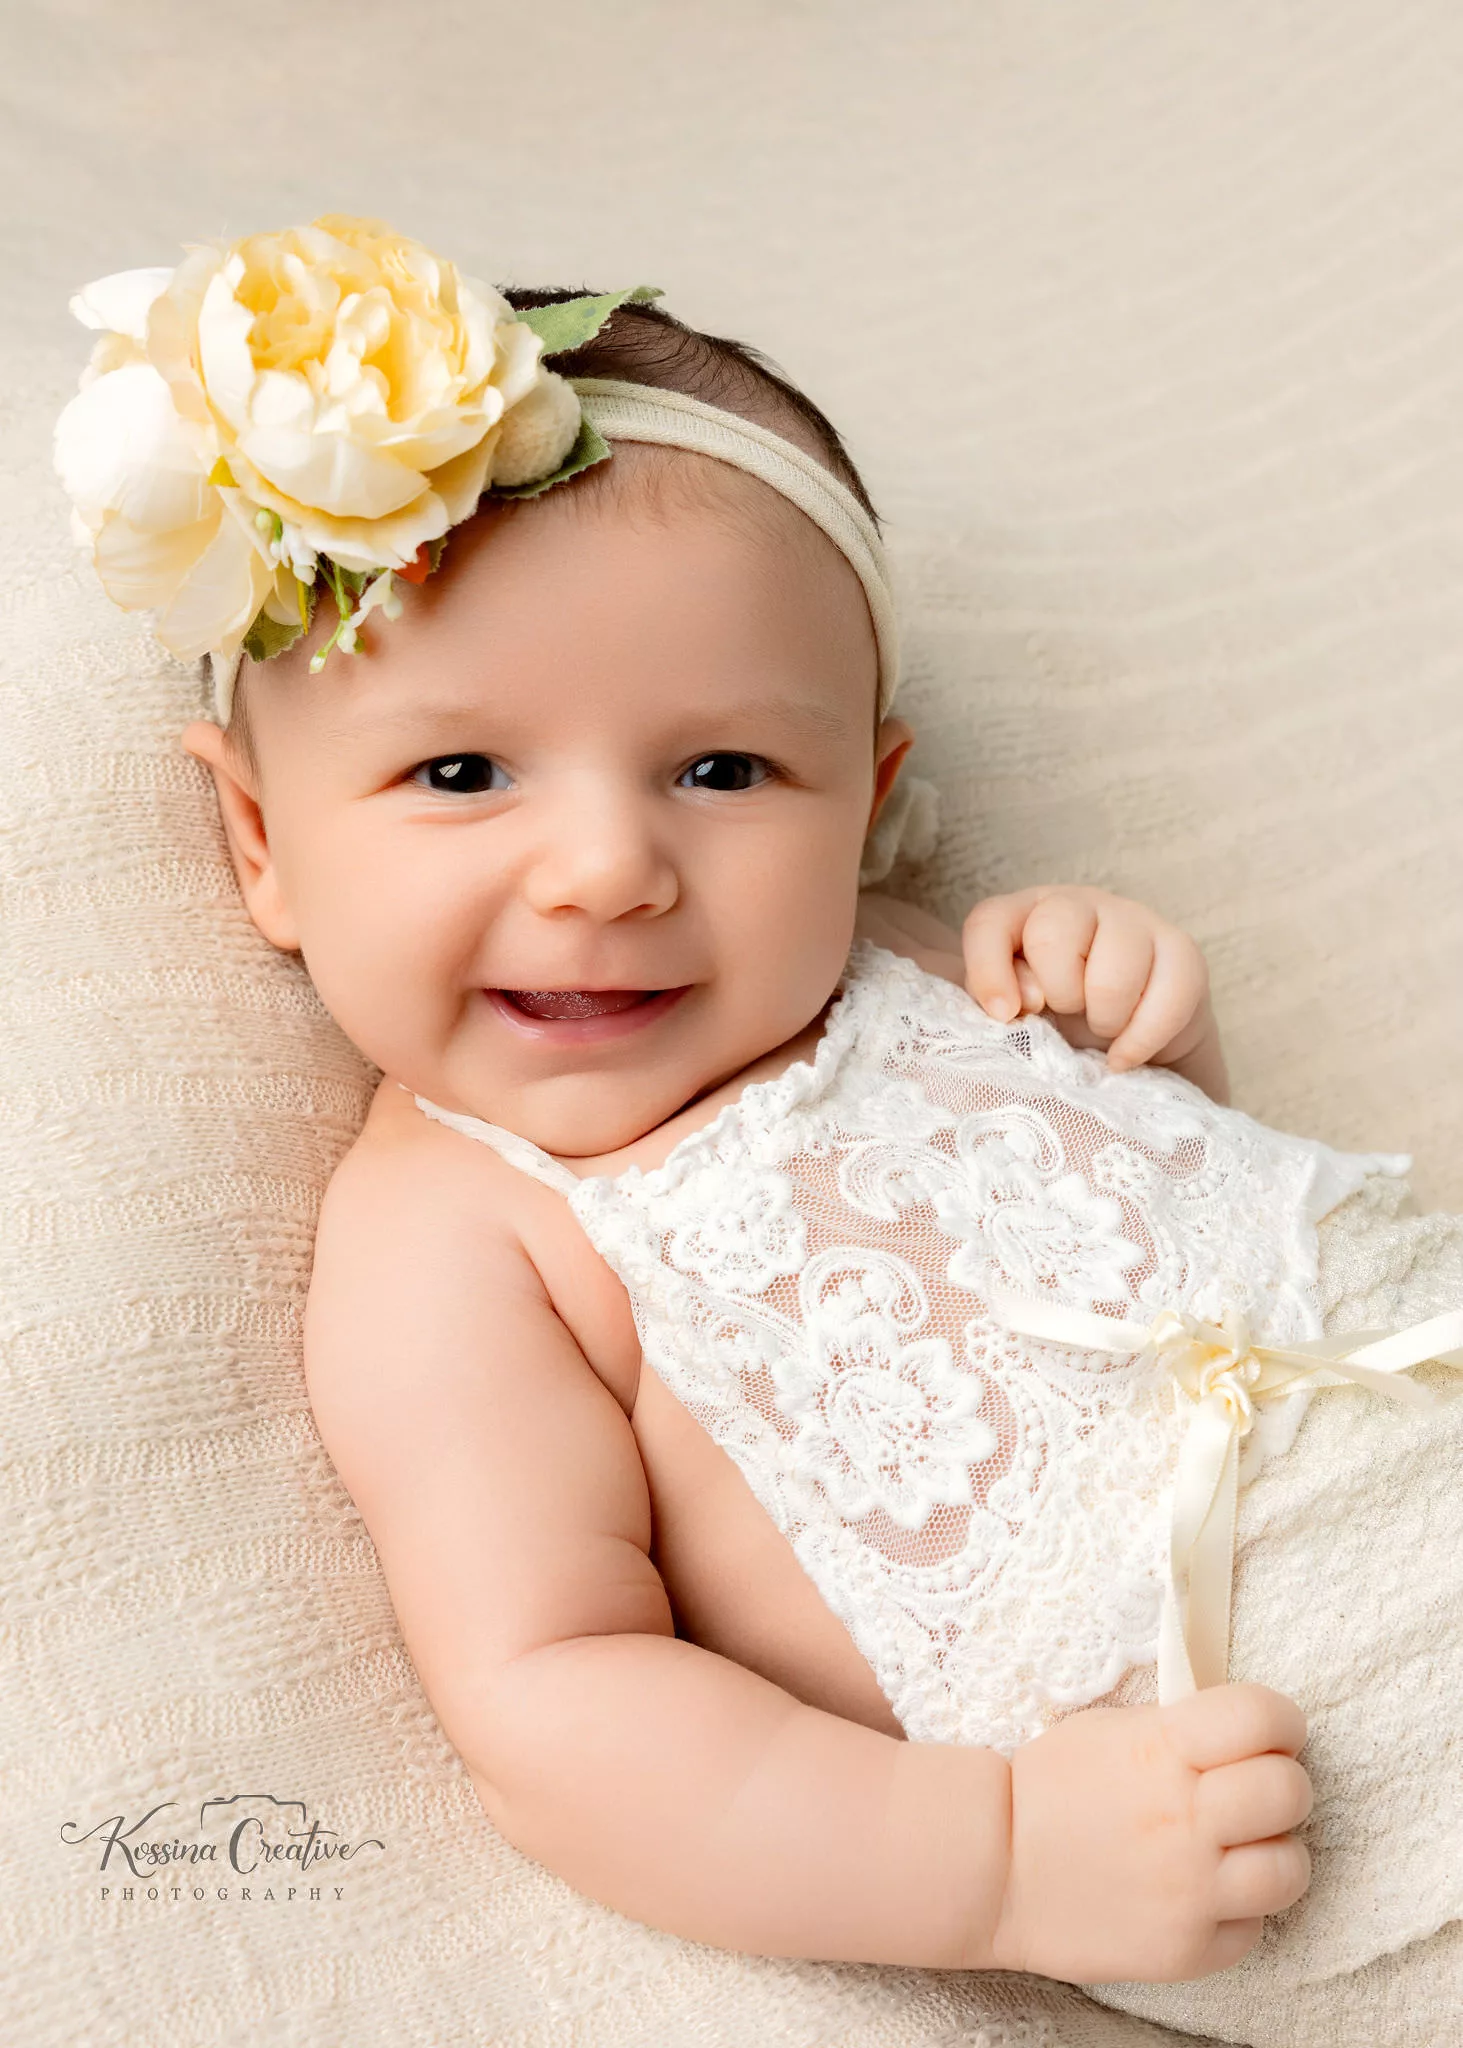 Orlando Newborn Photographer Baby Girl Photo studio cream week old baby